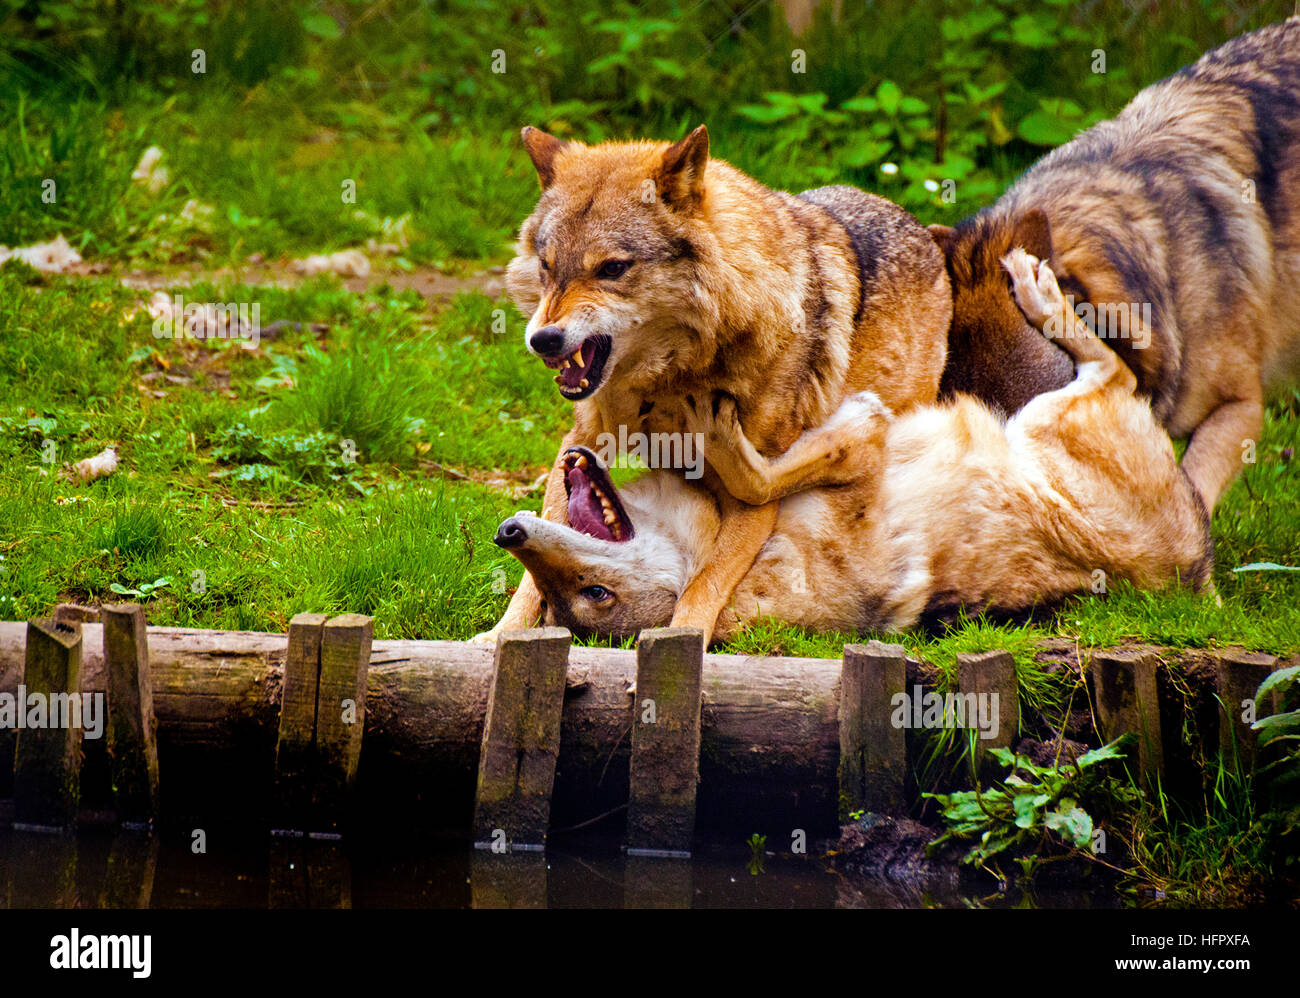 Geschwisterrivalität. 3 Wölfe, die ihre Fähigkeiten mit ein wenig spielen kämpfen! Habe ziemlich rau für ein paar Minuten! Stockfoto